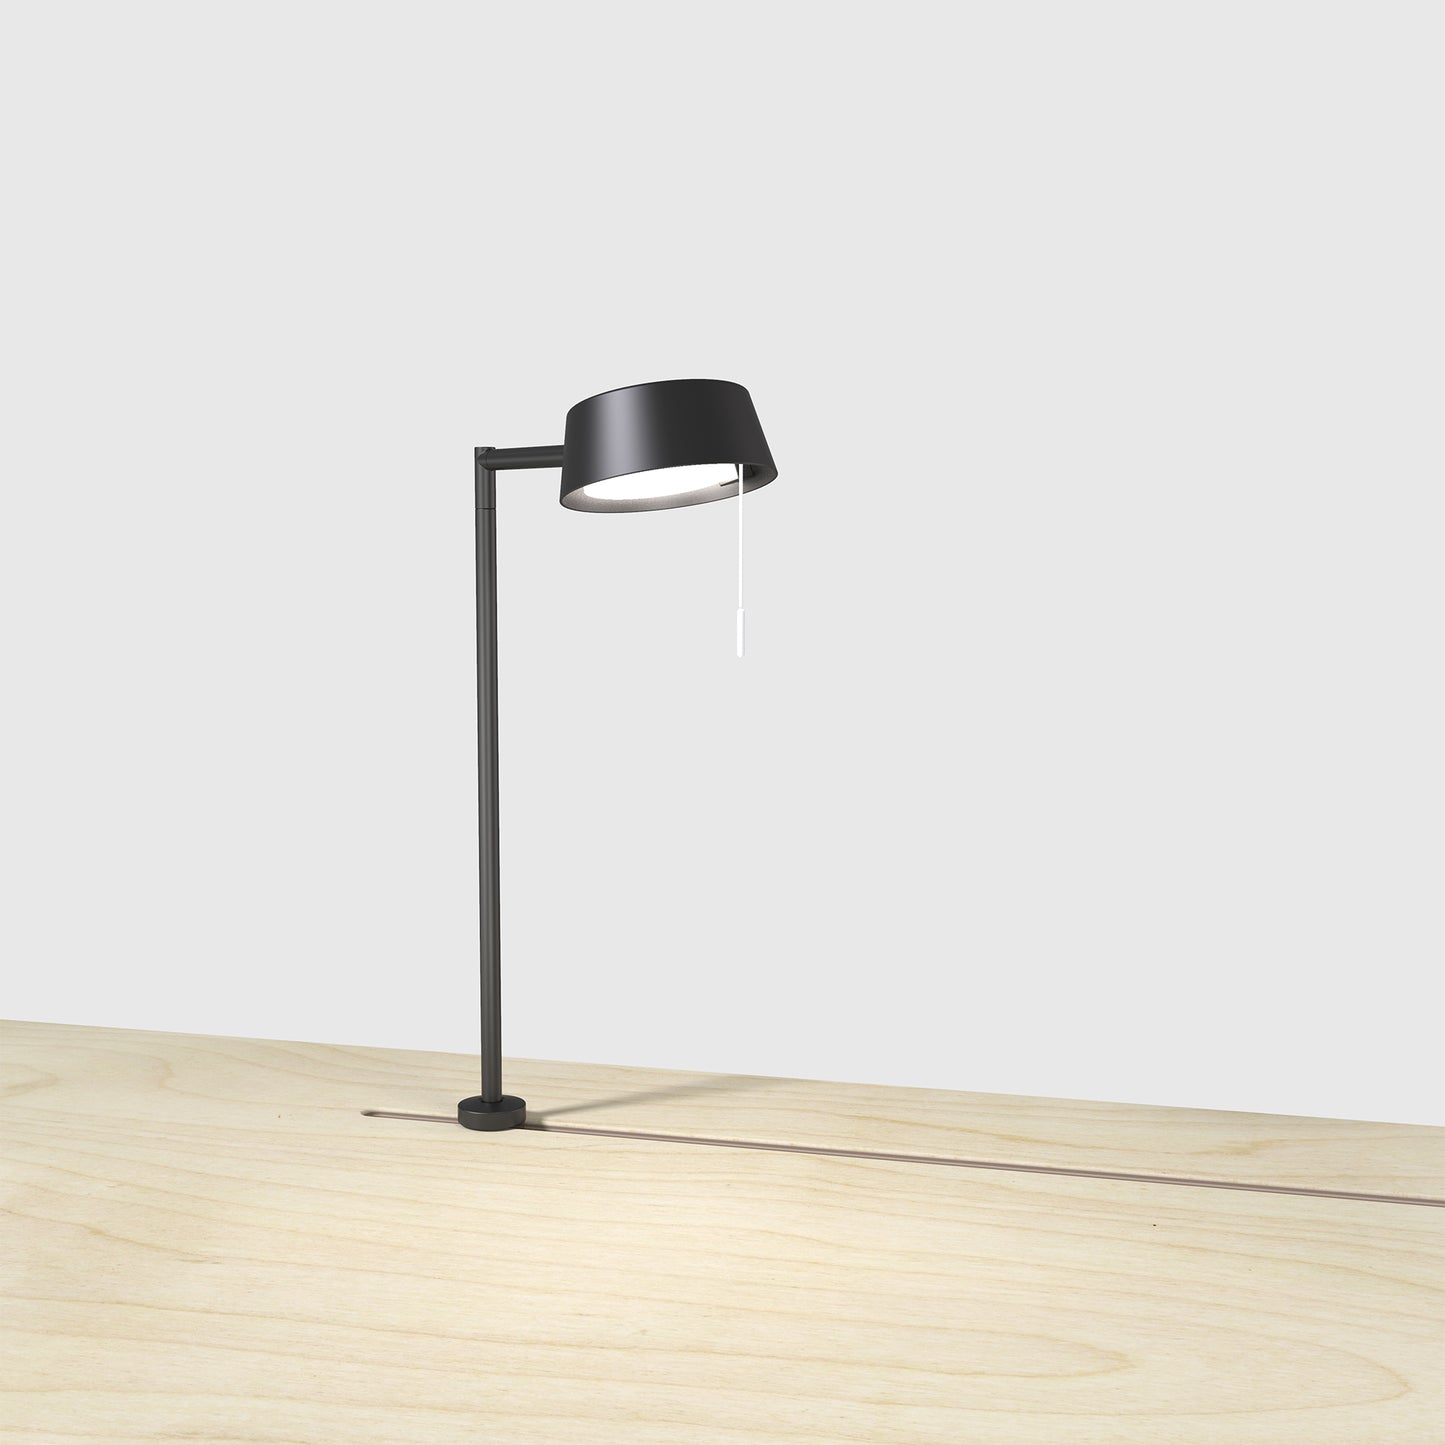 מנורה שולחן מינימליסטית, מנורת שולחן מעוצבת, מנורת שולחן שחורה, מנורת שולחן מיוחדת, מנורת שולחן ראק אנד טאק